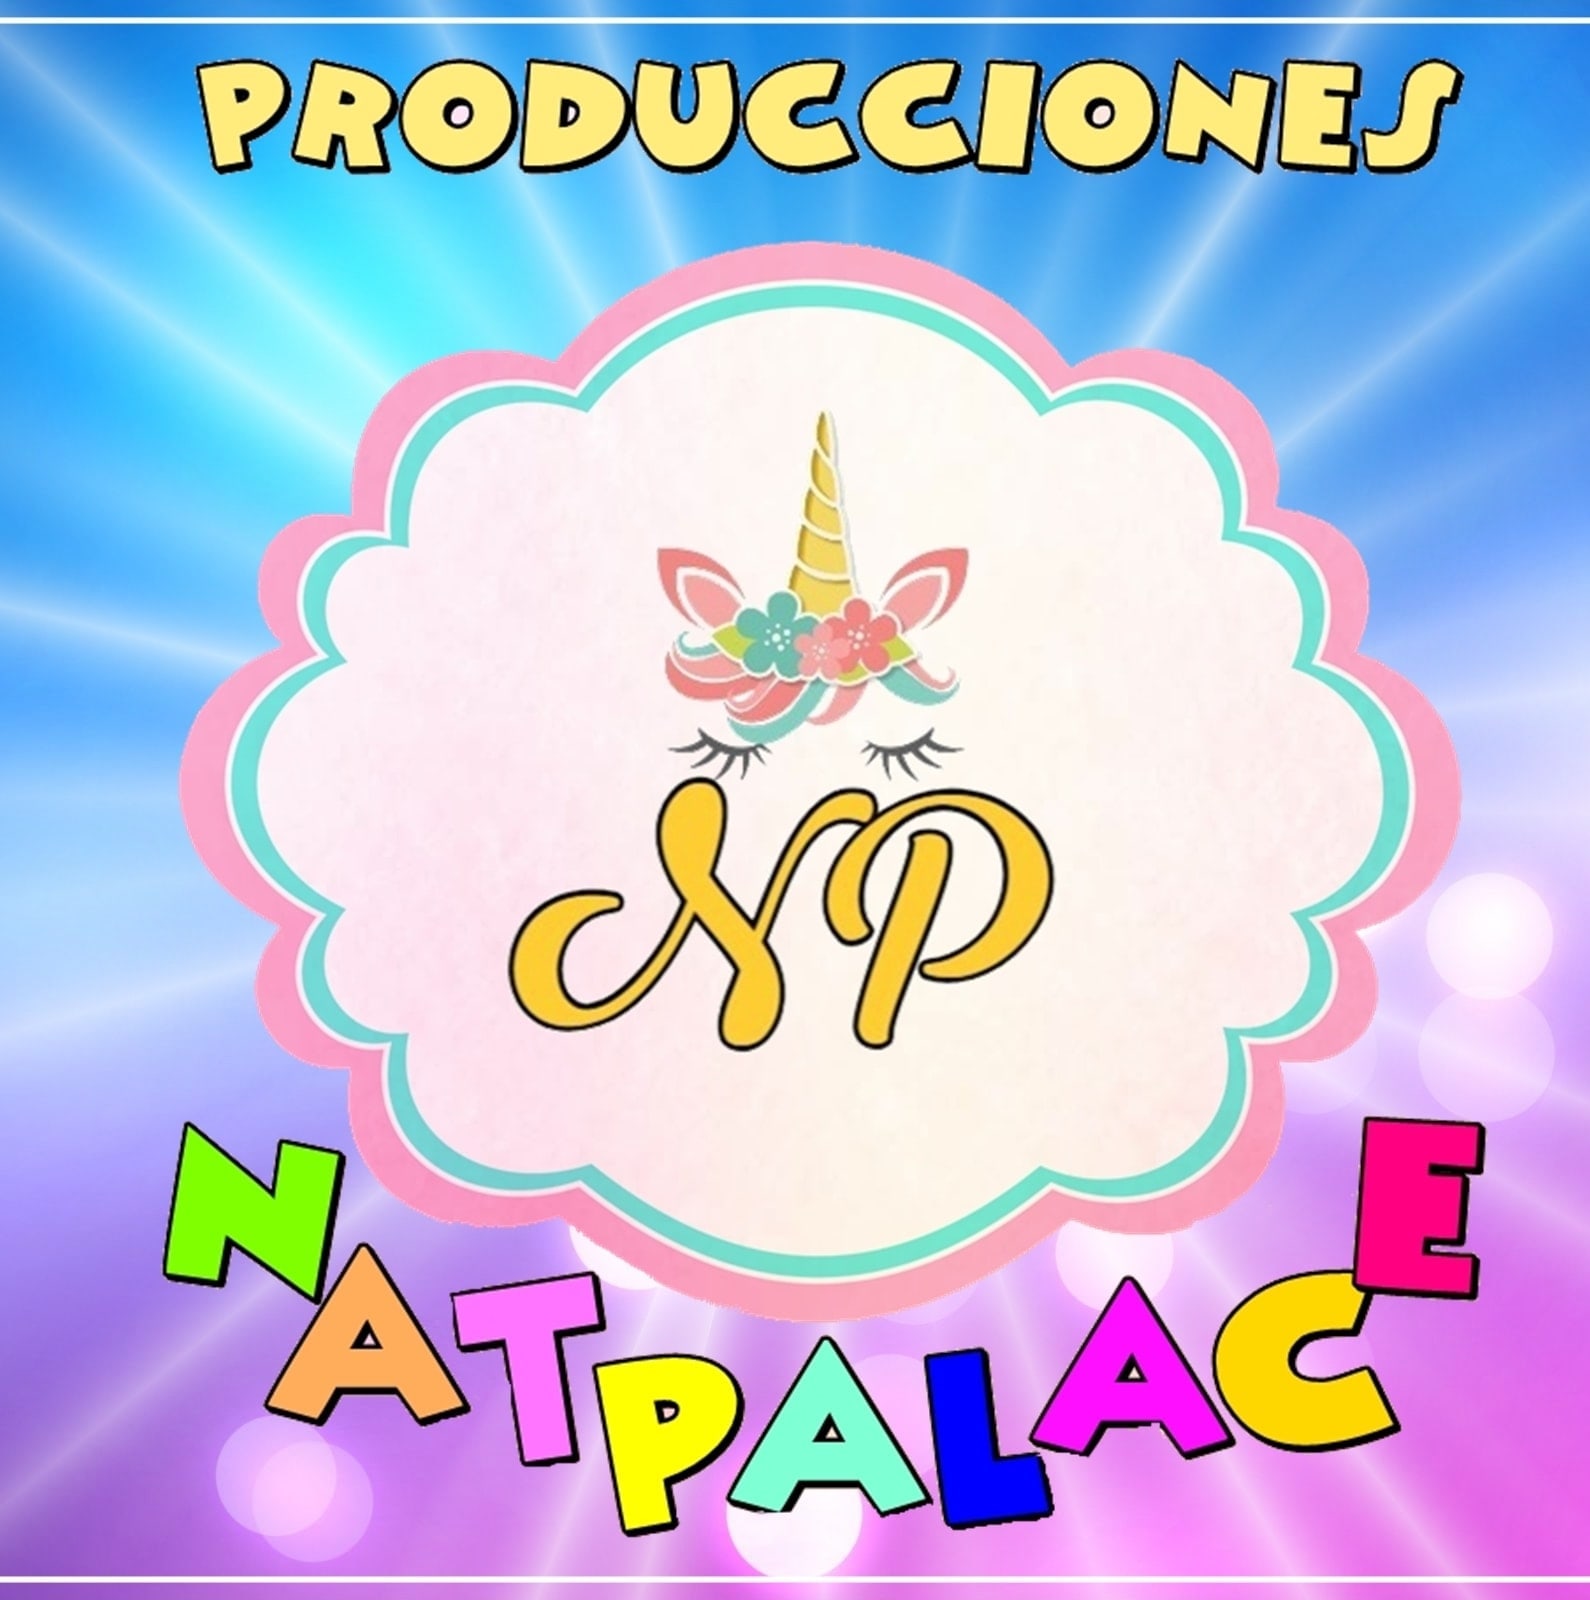 Producciones NatPalace